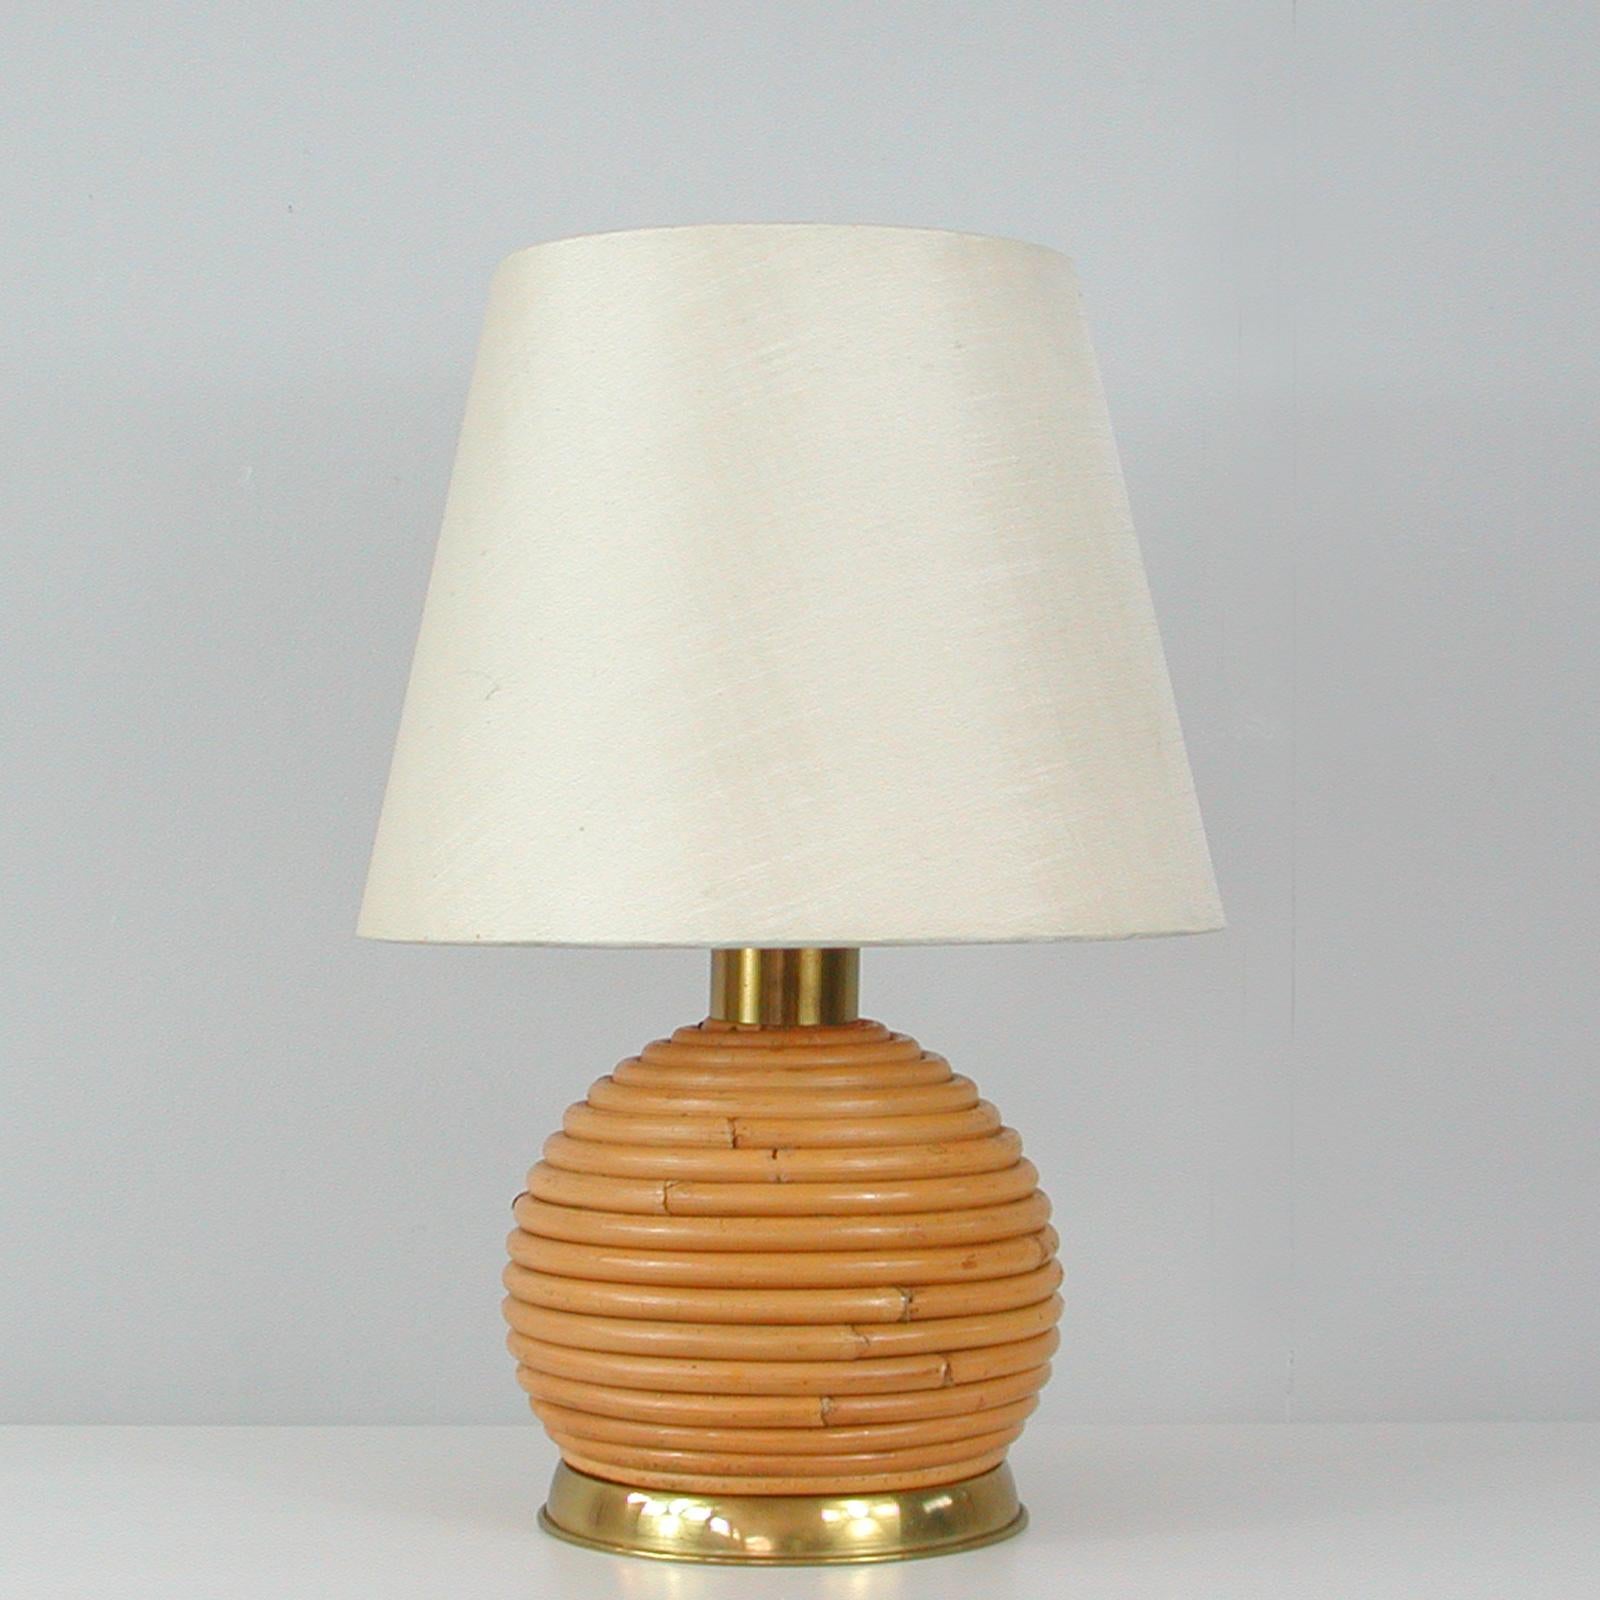 Cette lampe de table inhabituelle a été conçue et fabriquée en Suède dans les années 1960. Il est doté d'une base en rotin ou en osier en forme de globe et de ferrures en laiton. L'abat-jour original est en soie de couleur crème.

Bon état